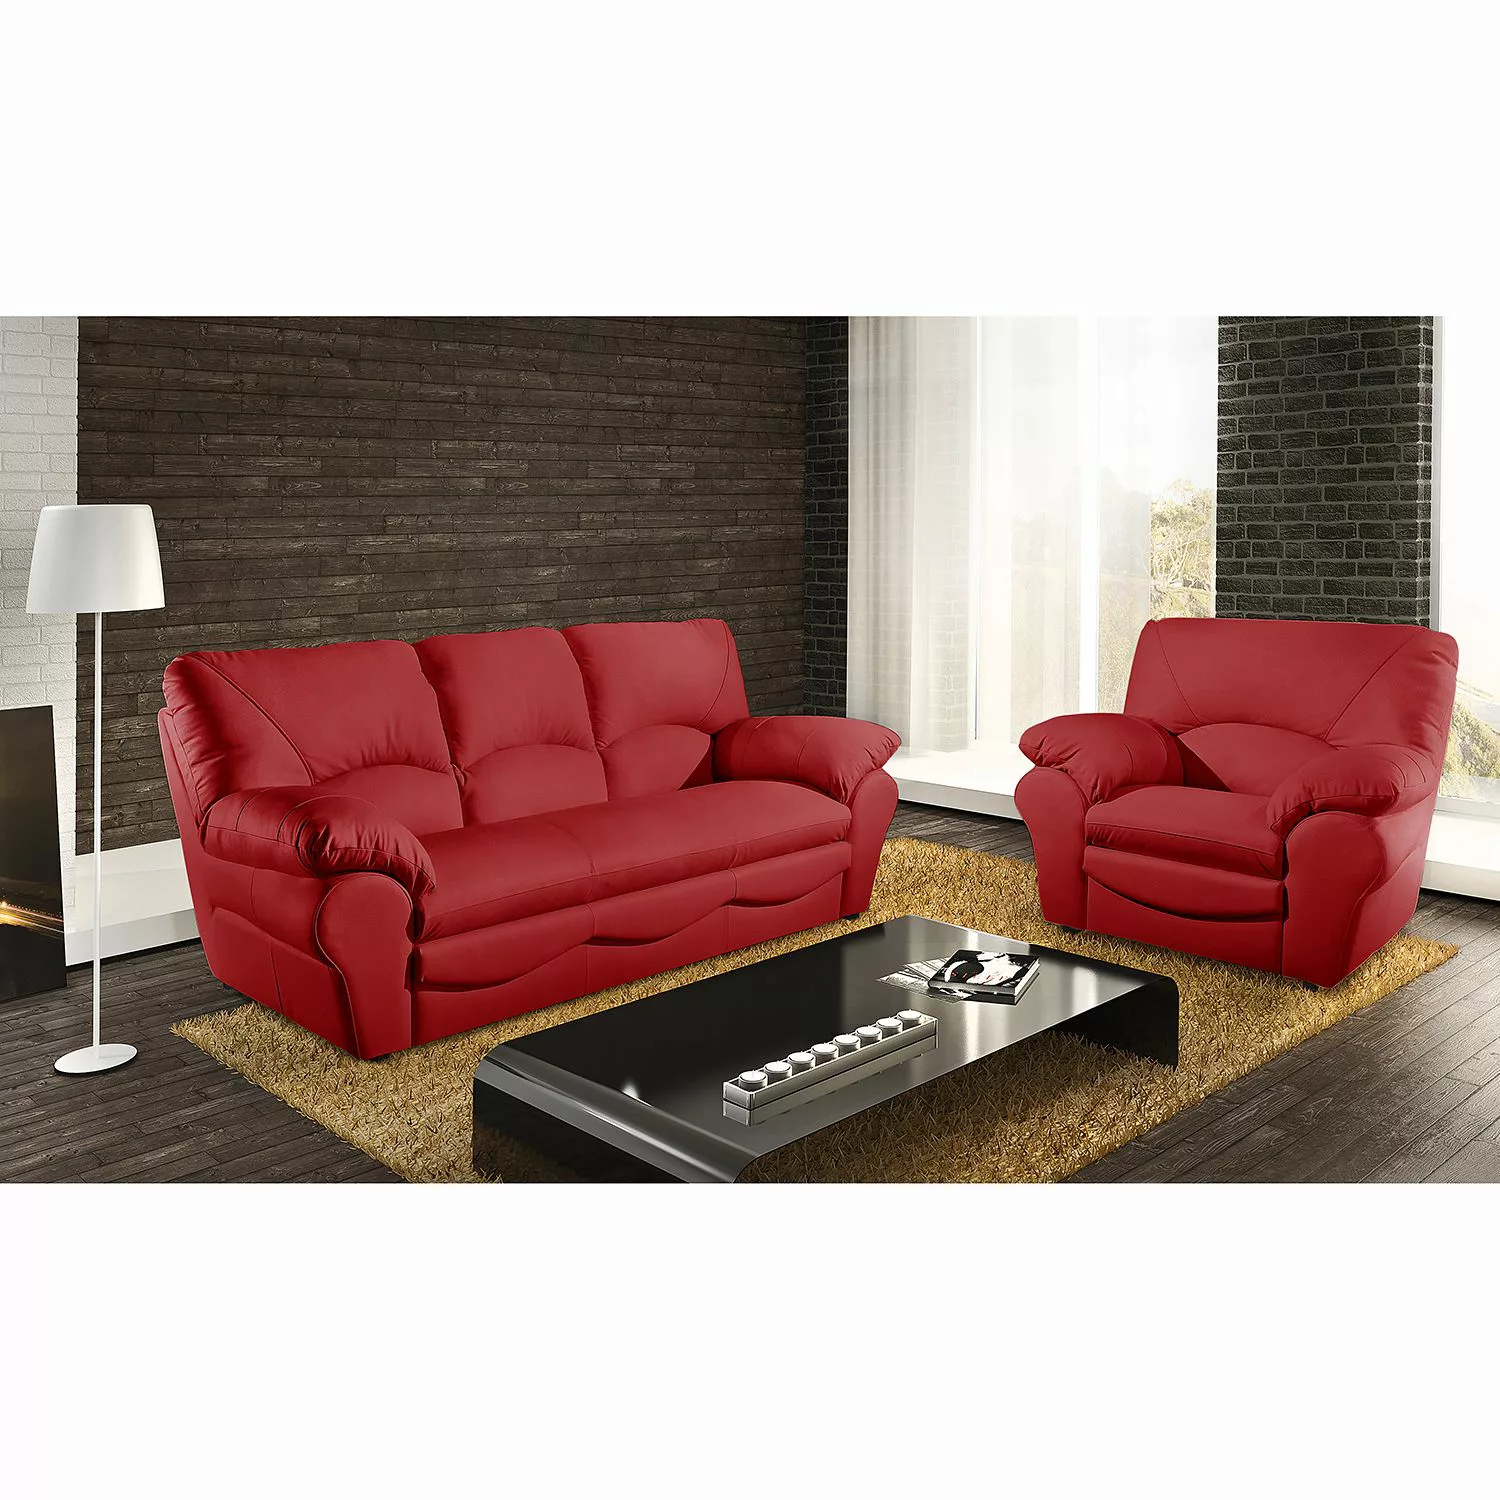 home24 Modoform Sessel Torsby Rot Echtleder 105x92x85 cm (BxHxT) günstig online kaufen